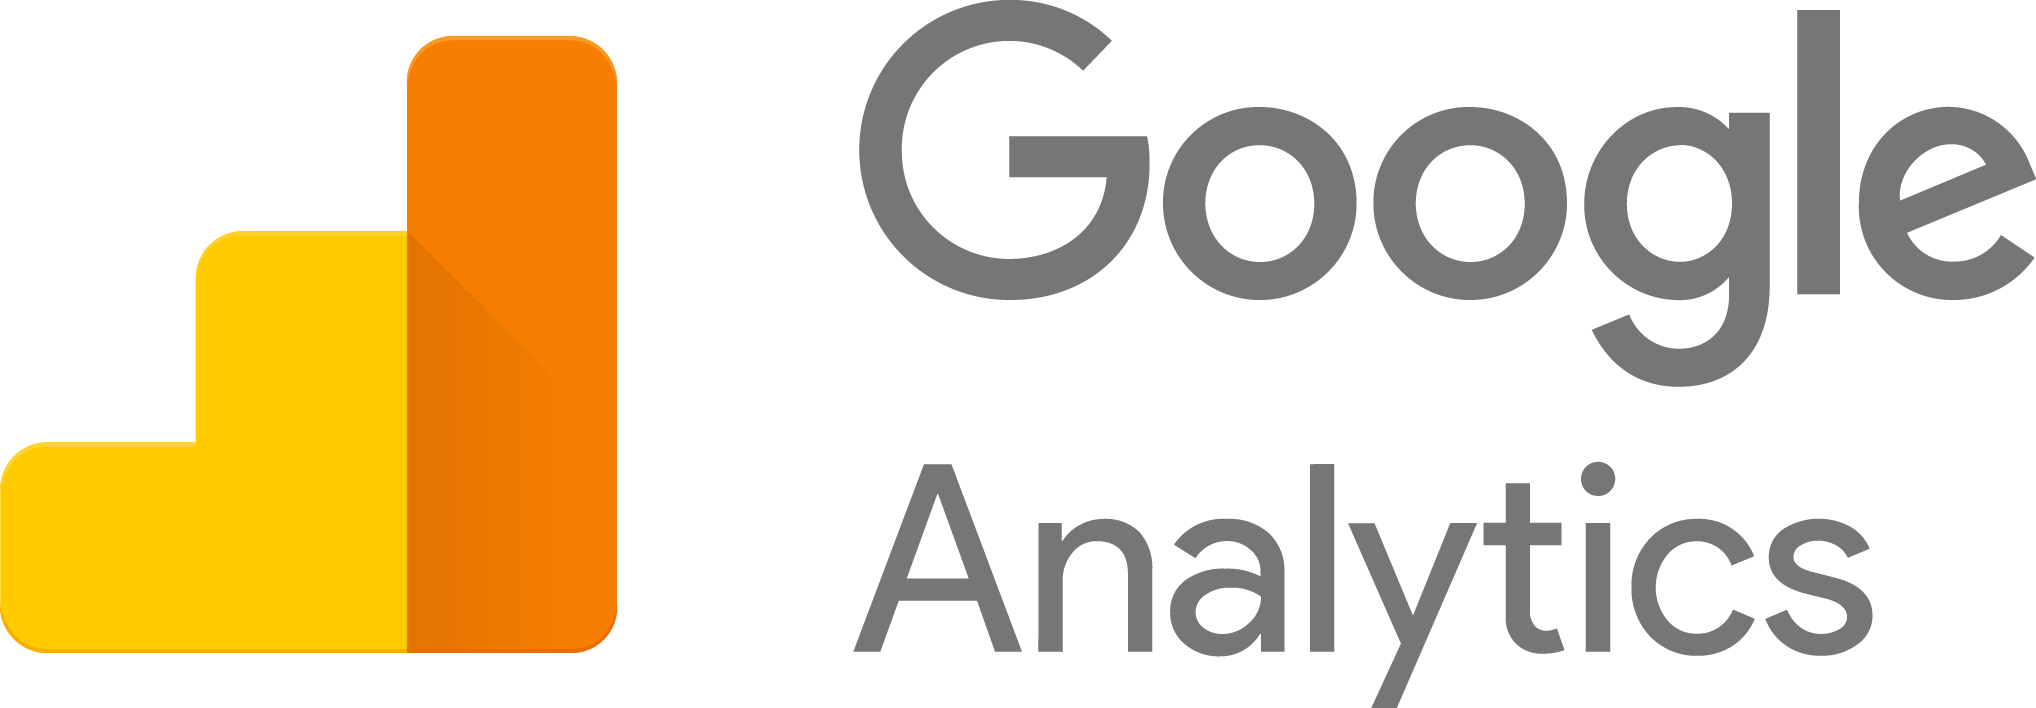 5 Google Analytics Loopholes 